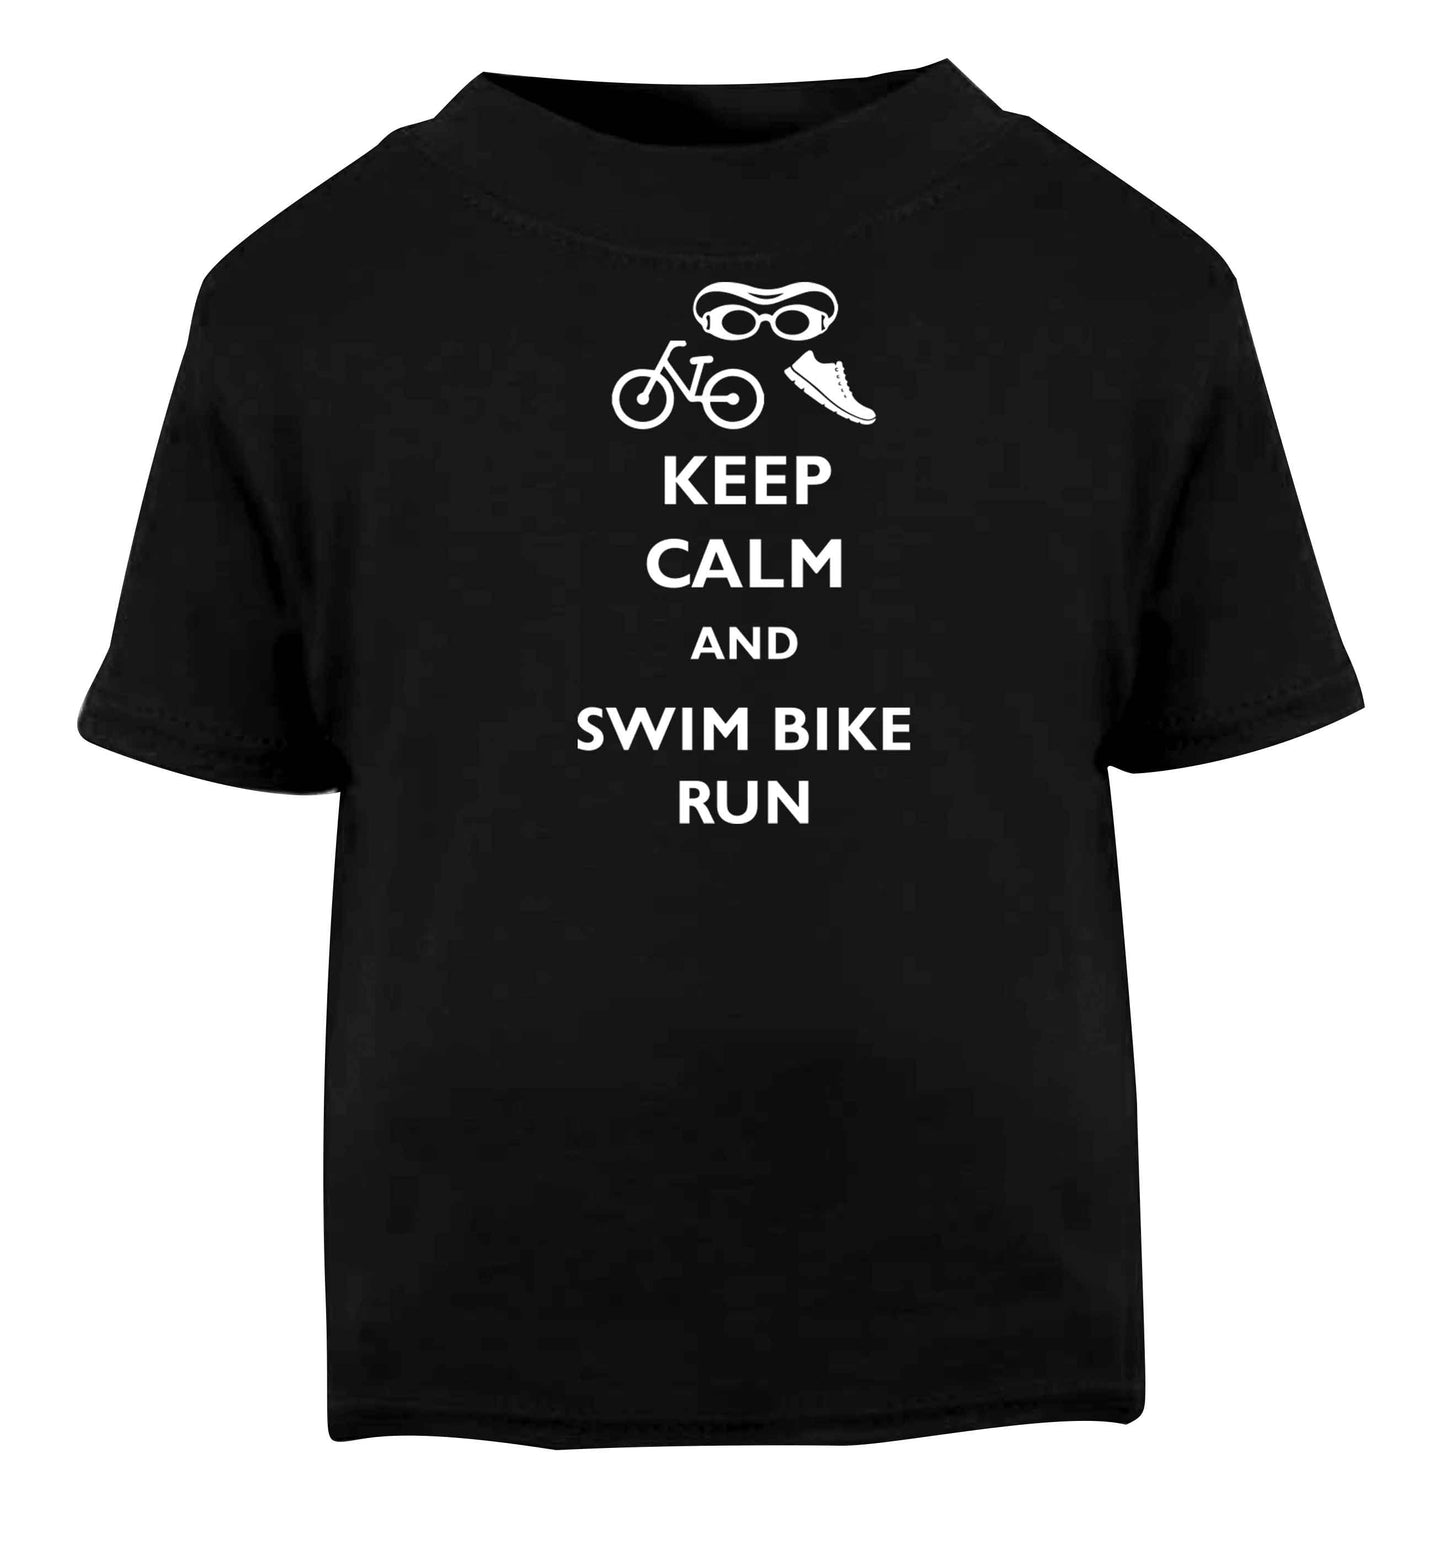 Keep calm and swim bike run Black baby toddler Tshirt 2 years